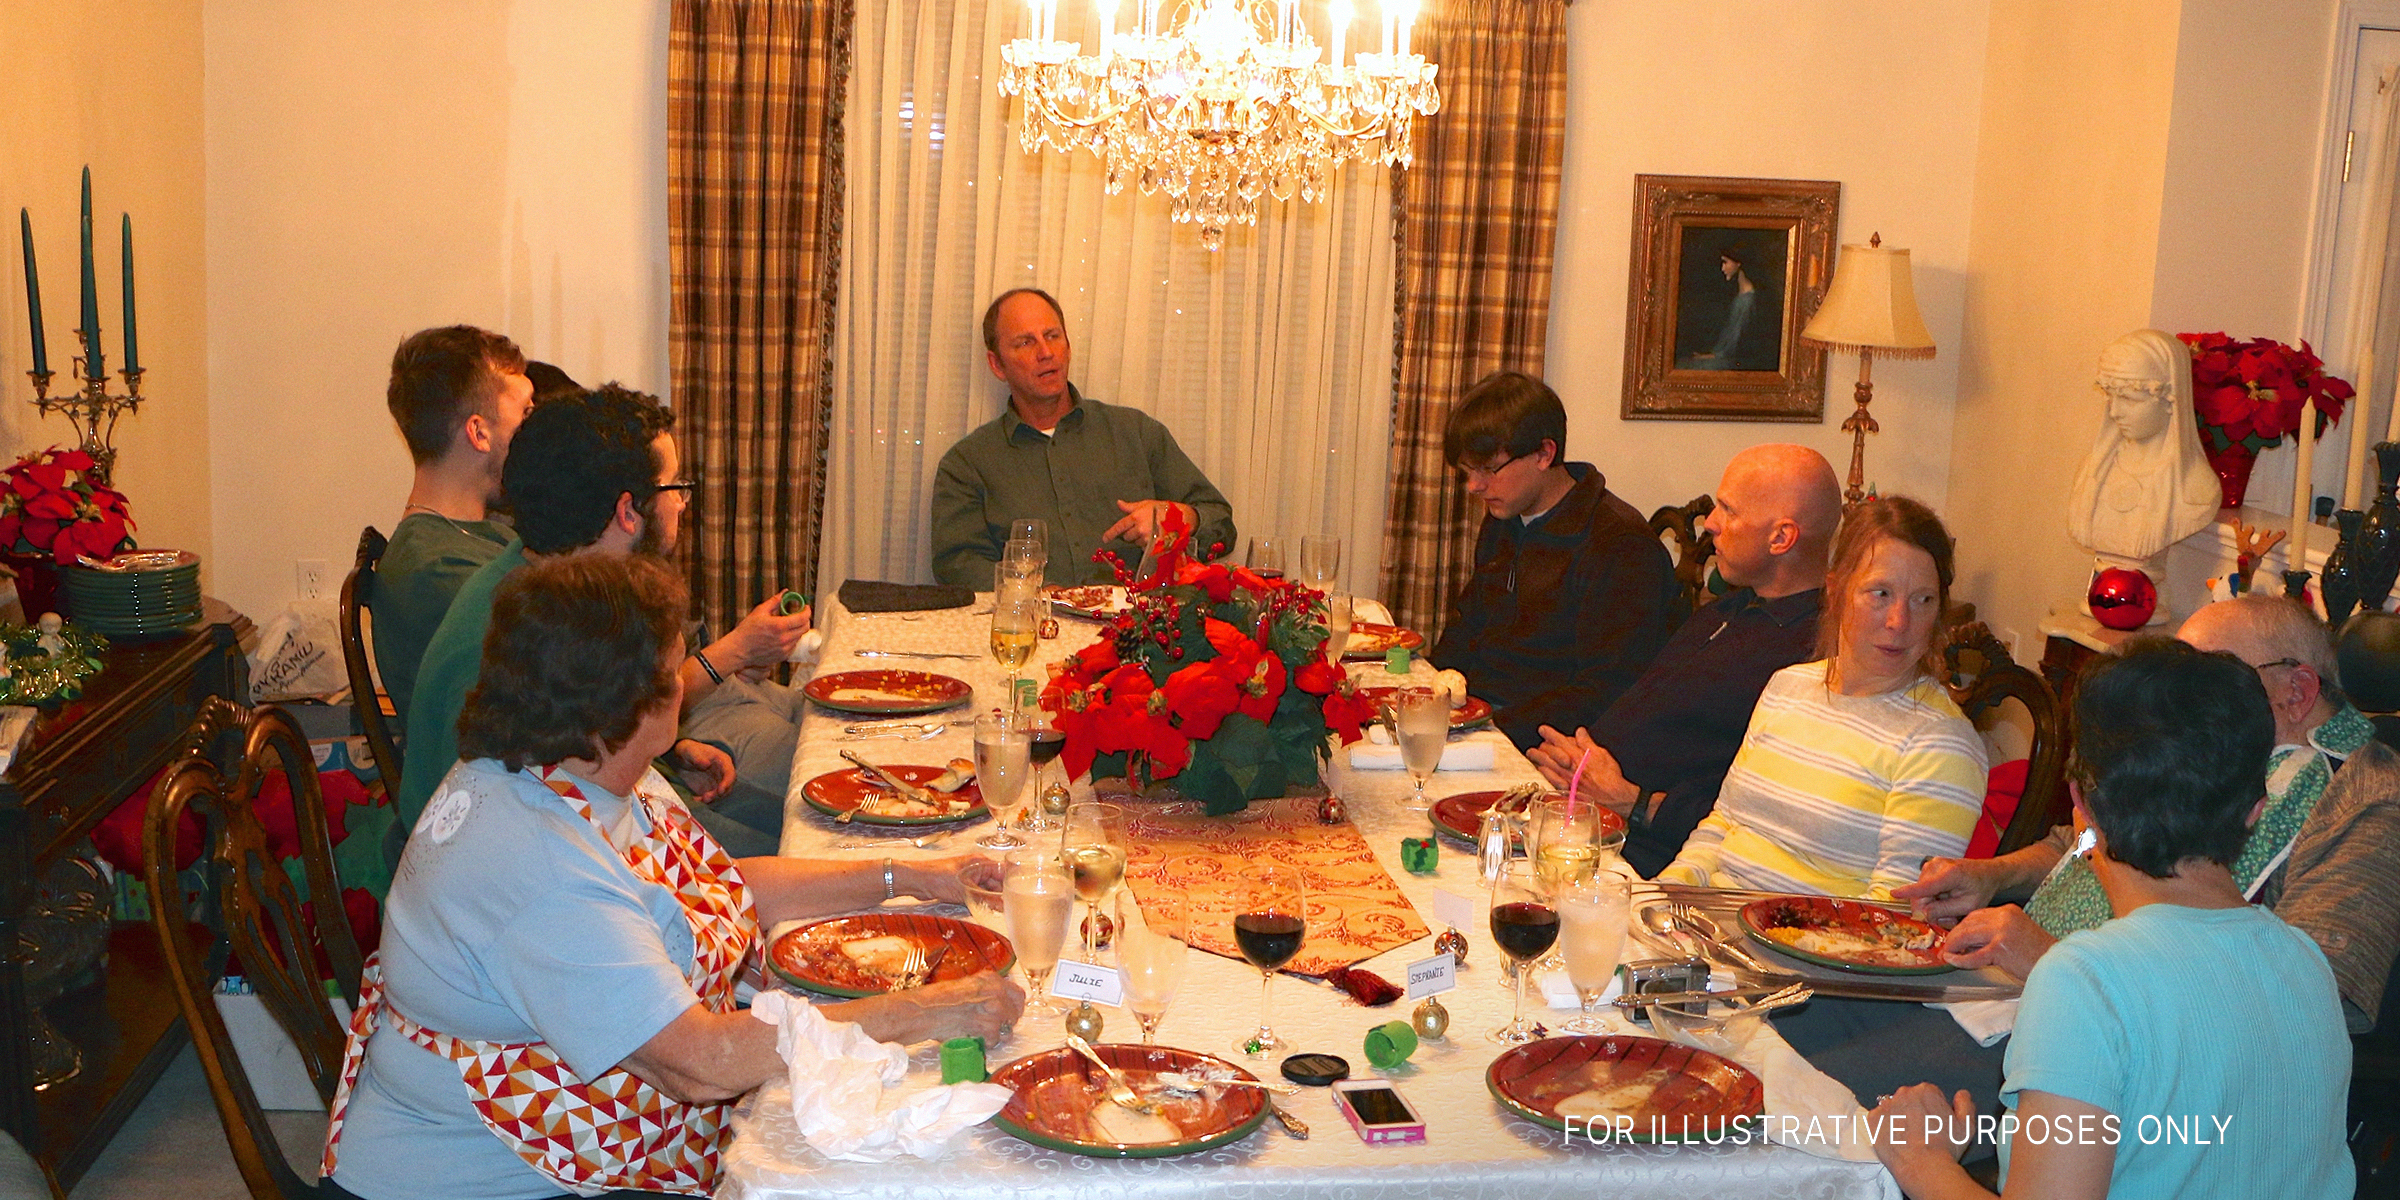 A family gathered for Christmas dinner | flickr.com/oakleyoriginals/CC BY 2.0